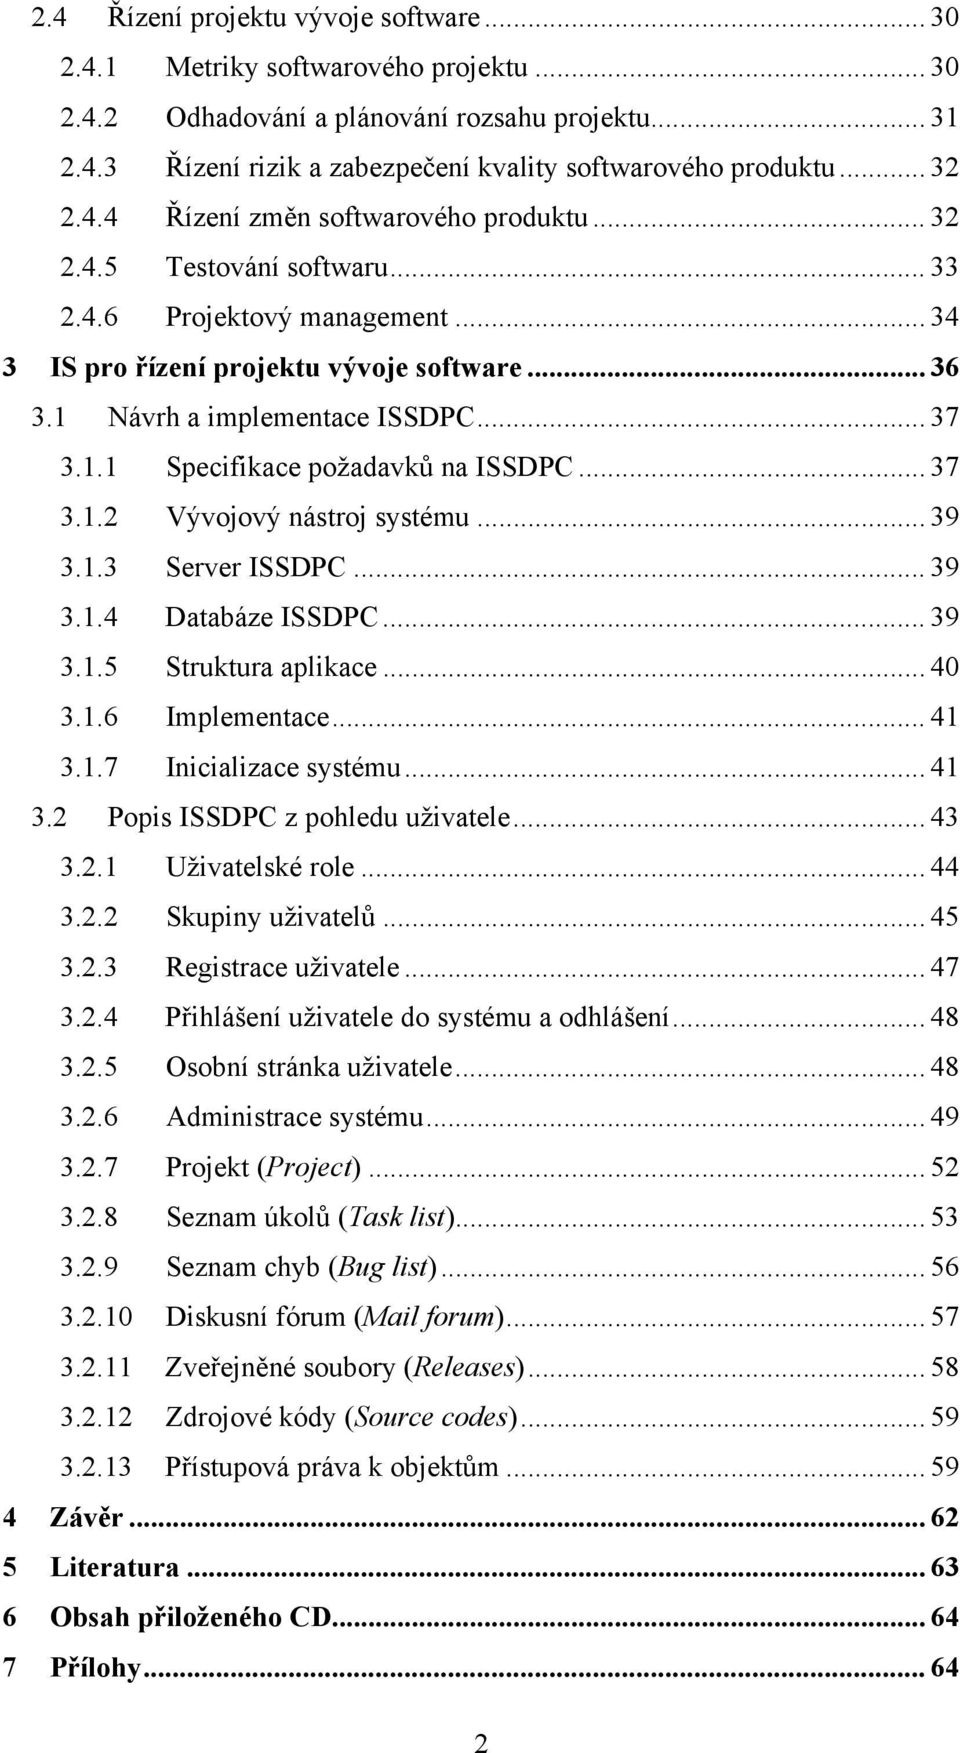 .. 37 3.1.1 Specifikace požadavků na ISSDPC... 37 3.1.2 Vývojový nástroj systému... 39 3.1.3 Server ISSDPC... 39 3.1.4 Databáze ISSDPC... 39 3.1.5 Struktura aplikace... 40 3.1.6 Implementace... 41 3.